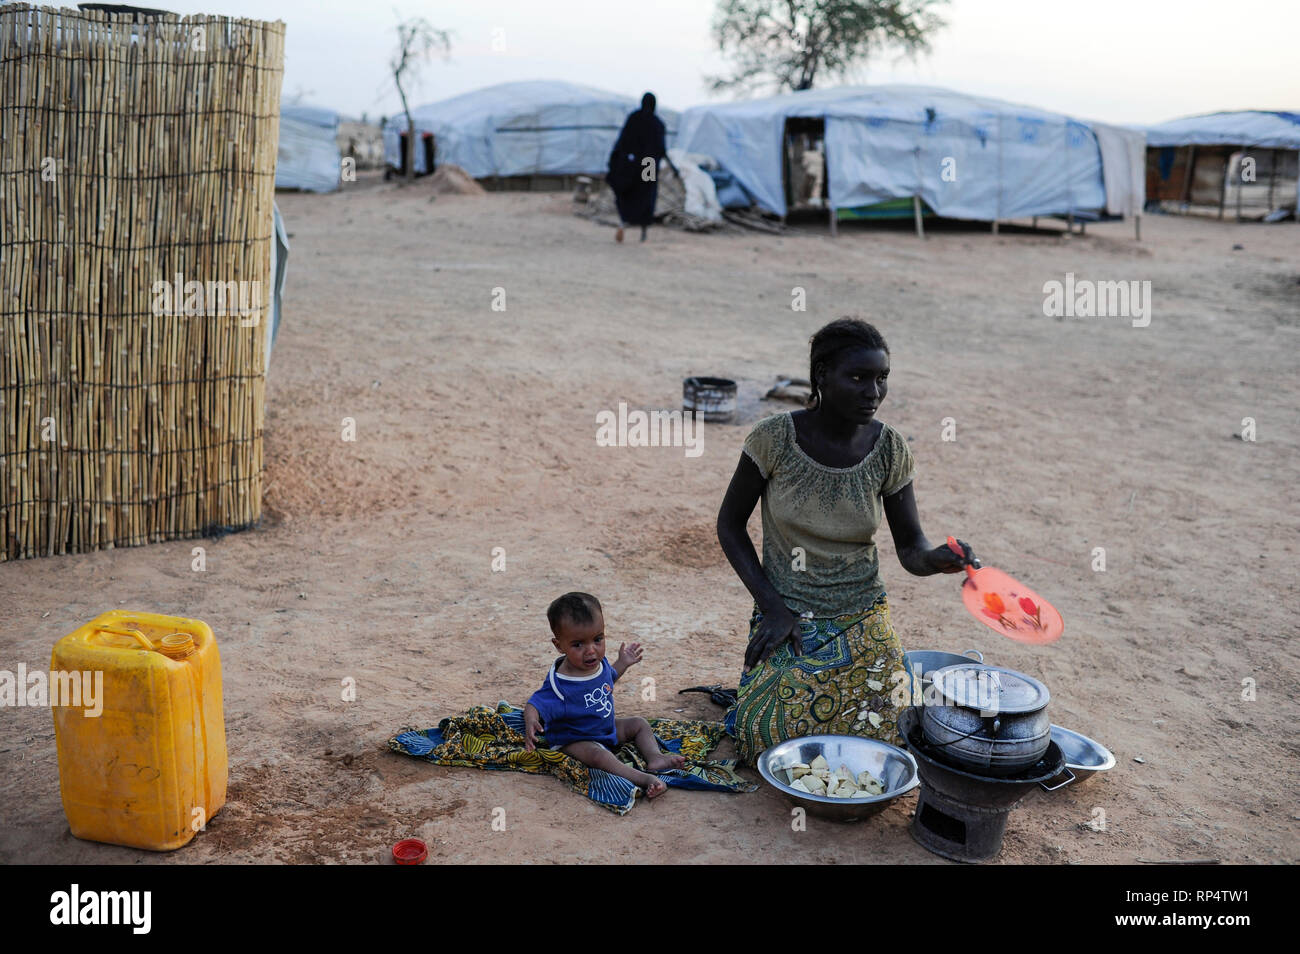 Djibo, BURKINA FASO, la plupart des réfugiés maliens touaregs, camp de réfugiés de Mentao du HCR, ils ont fui en raison de la guerre et de la terreur islamiste dans le nord du Mali, l'Afrique noire et de ménage gardienne de famille touareg poêle de cuisson Banque D'Images